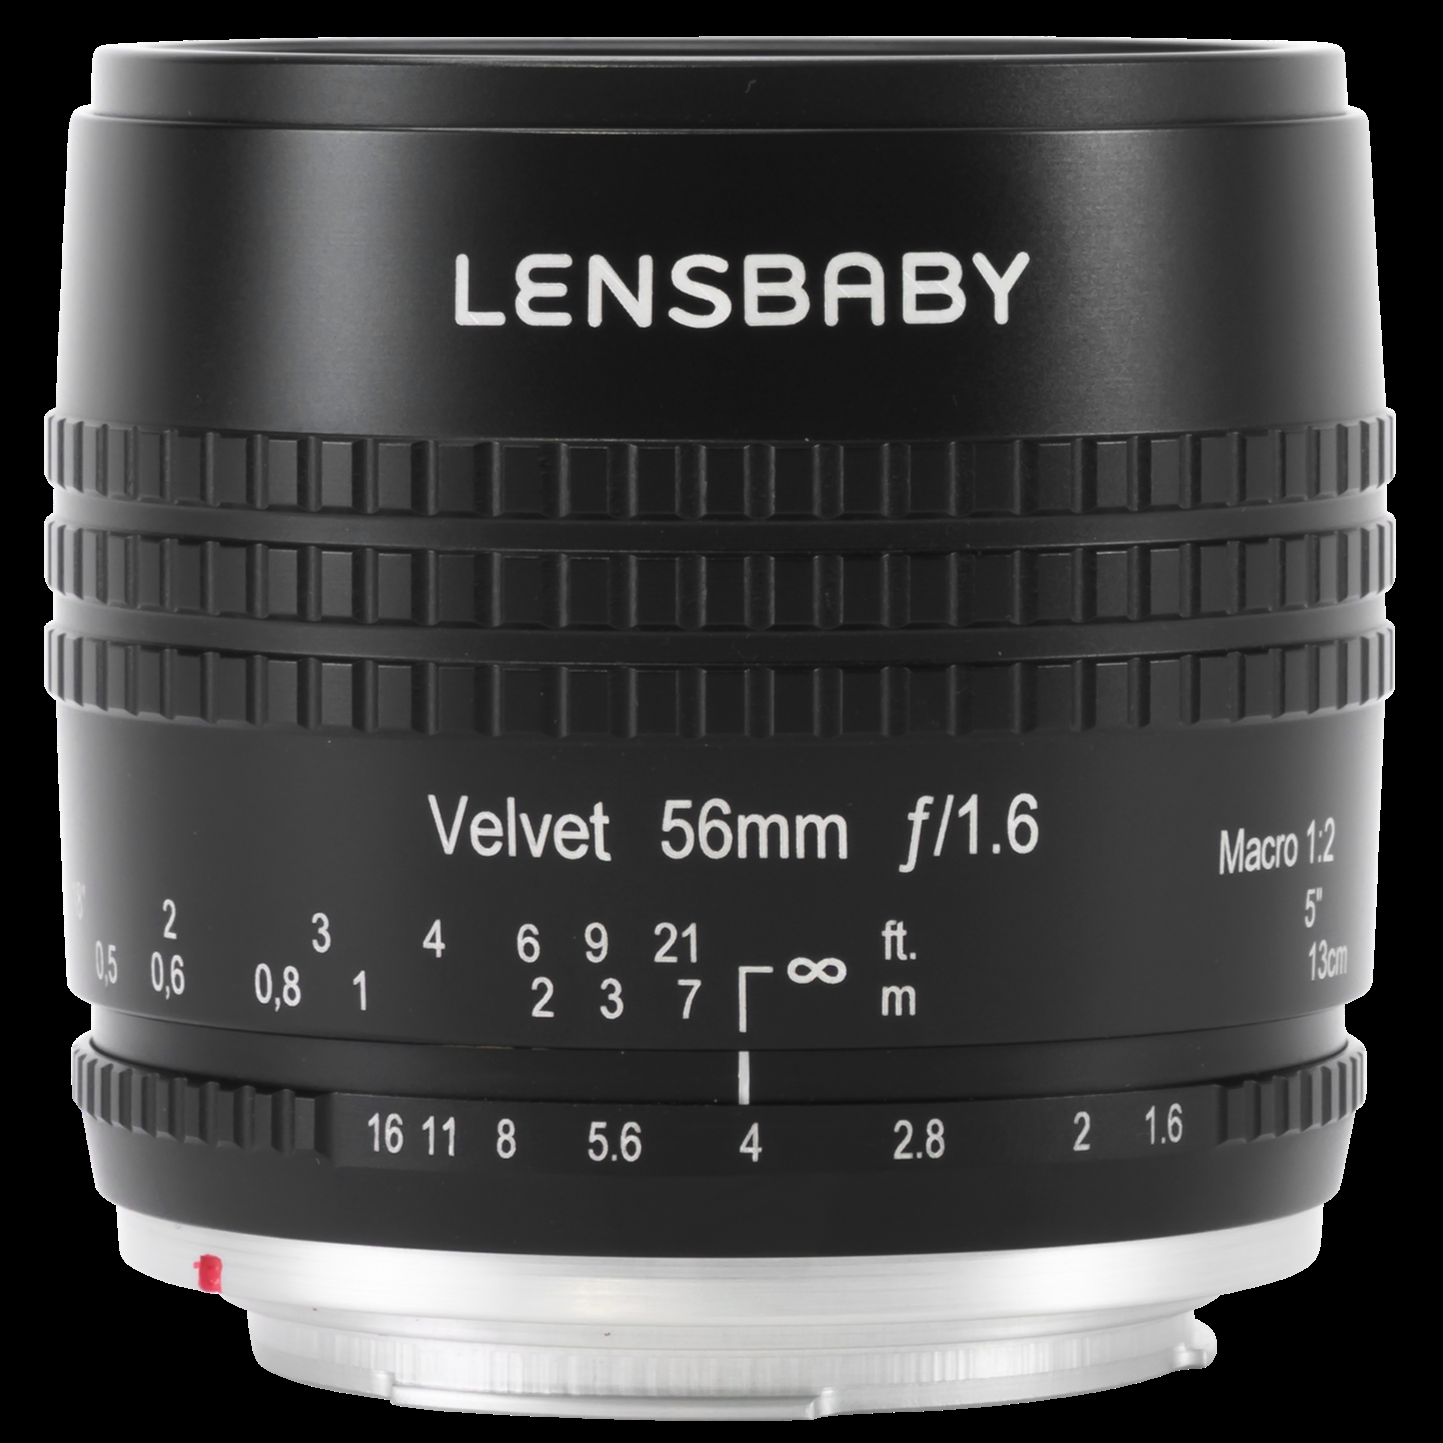 Lensbaby Velvet 56mm f/1.6 Lens for Leica L